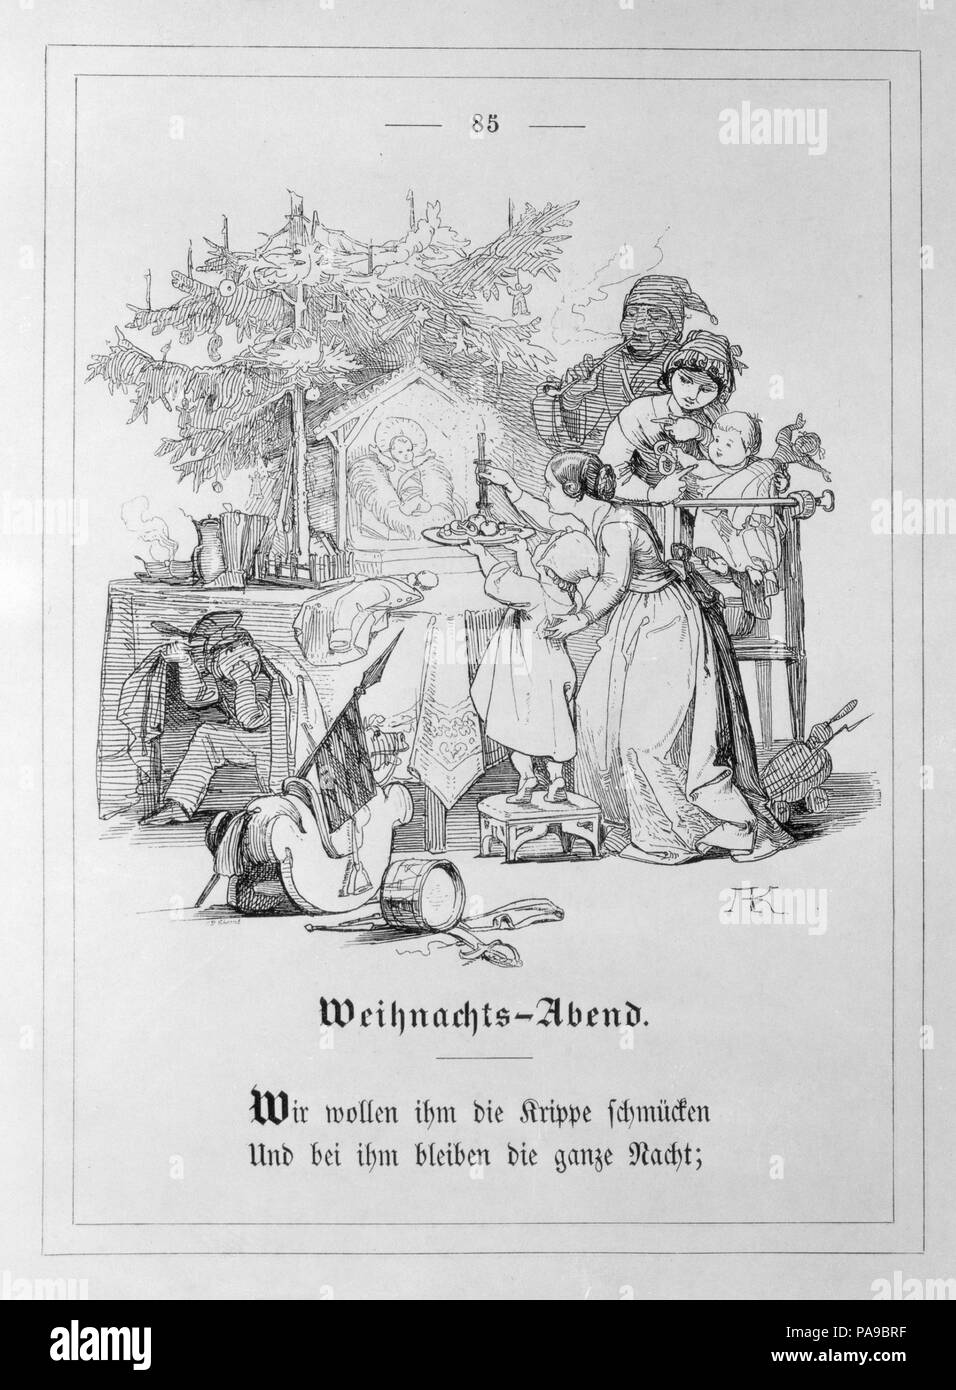 Alte und neue Kinderlieder, Fabeln, Sprüche und Räthsel. Artist: Moritz von Schwind (Austrian, Vienna 1804-1871 Munich); Wilhelm von Kaulbach (German, Arolsen 1804-1874 Munich); Adrian Ludwig Richter (German, Dresden 1803-1884 Dresden). Dimensions: Overall: 9 5/16 x 7 5/16 x 15/16 in. (23.6 x 18.5 x 2.4 cm). Editor: Edited by Georg Scherer. Engraver: Christian Neureuther. Printer: Printed by Breitkopf & Härtel (German). Publisher: Published by Gustav Mayer , Leipzig. Date: 1849. Museum: Metropolitan Museum of Art, New York, USA. Stock Photo